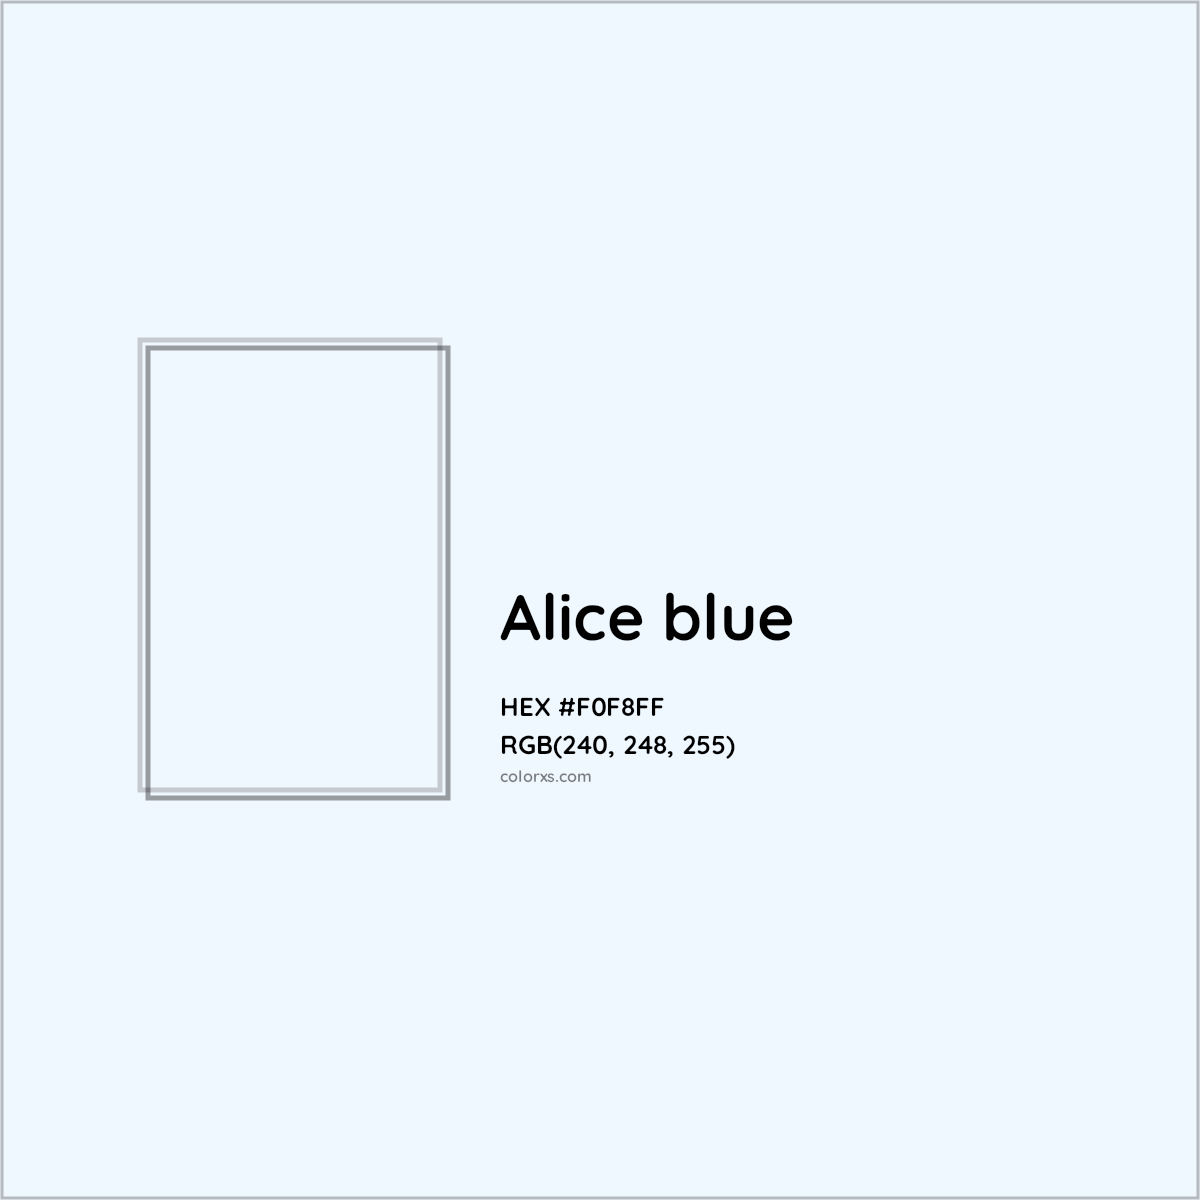 HEX #F0F8FF Alice blue Color - Color Code